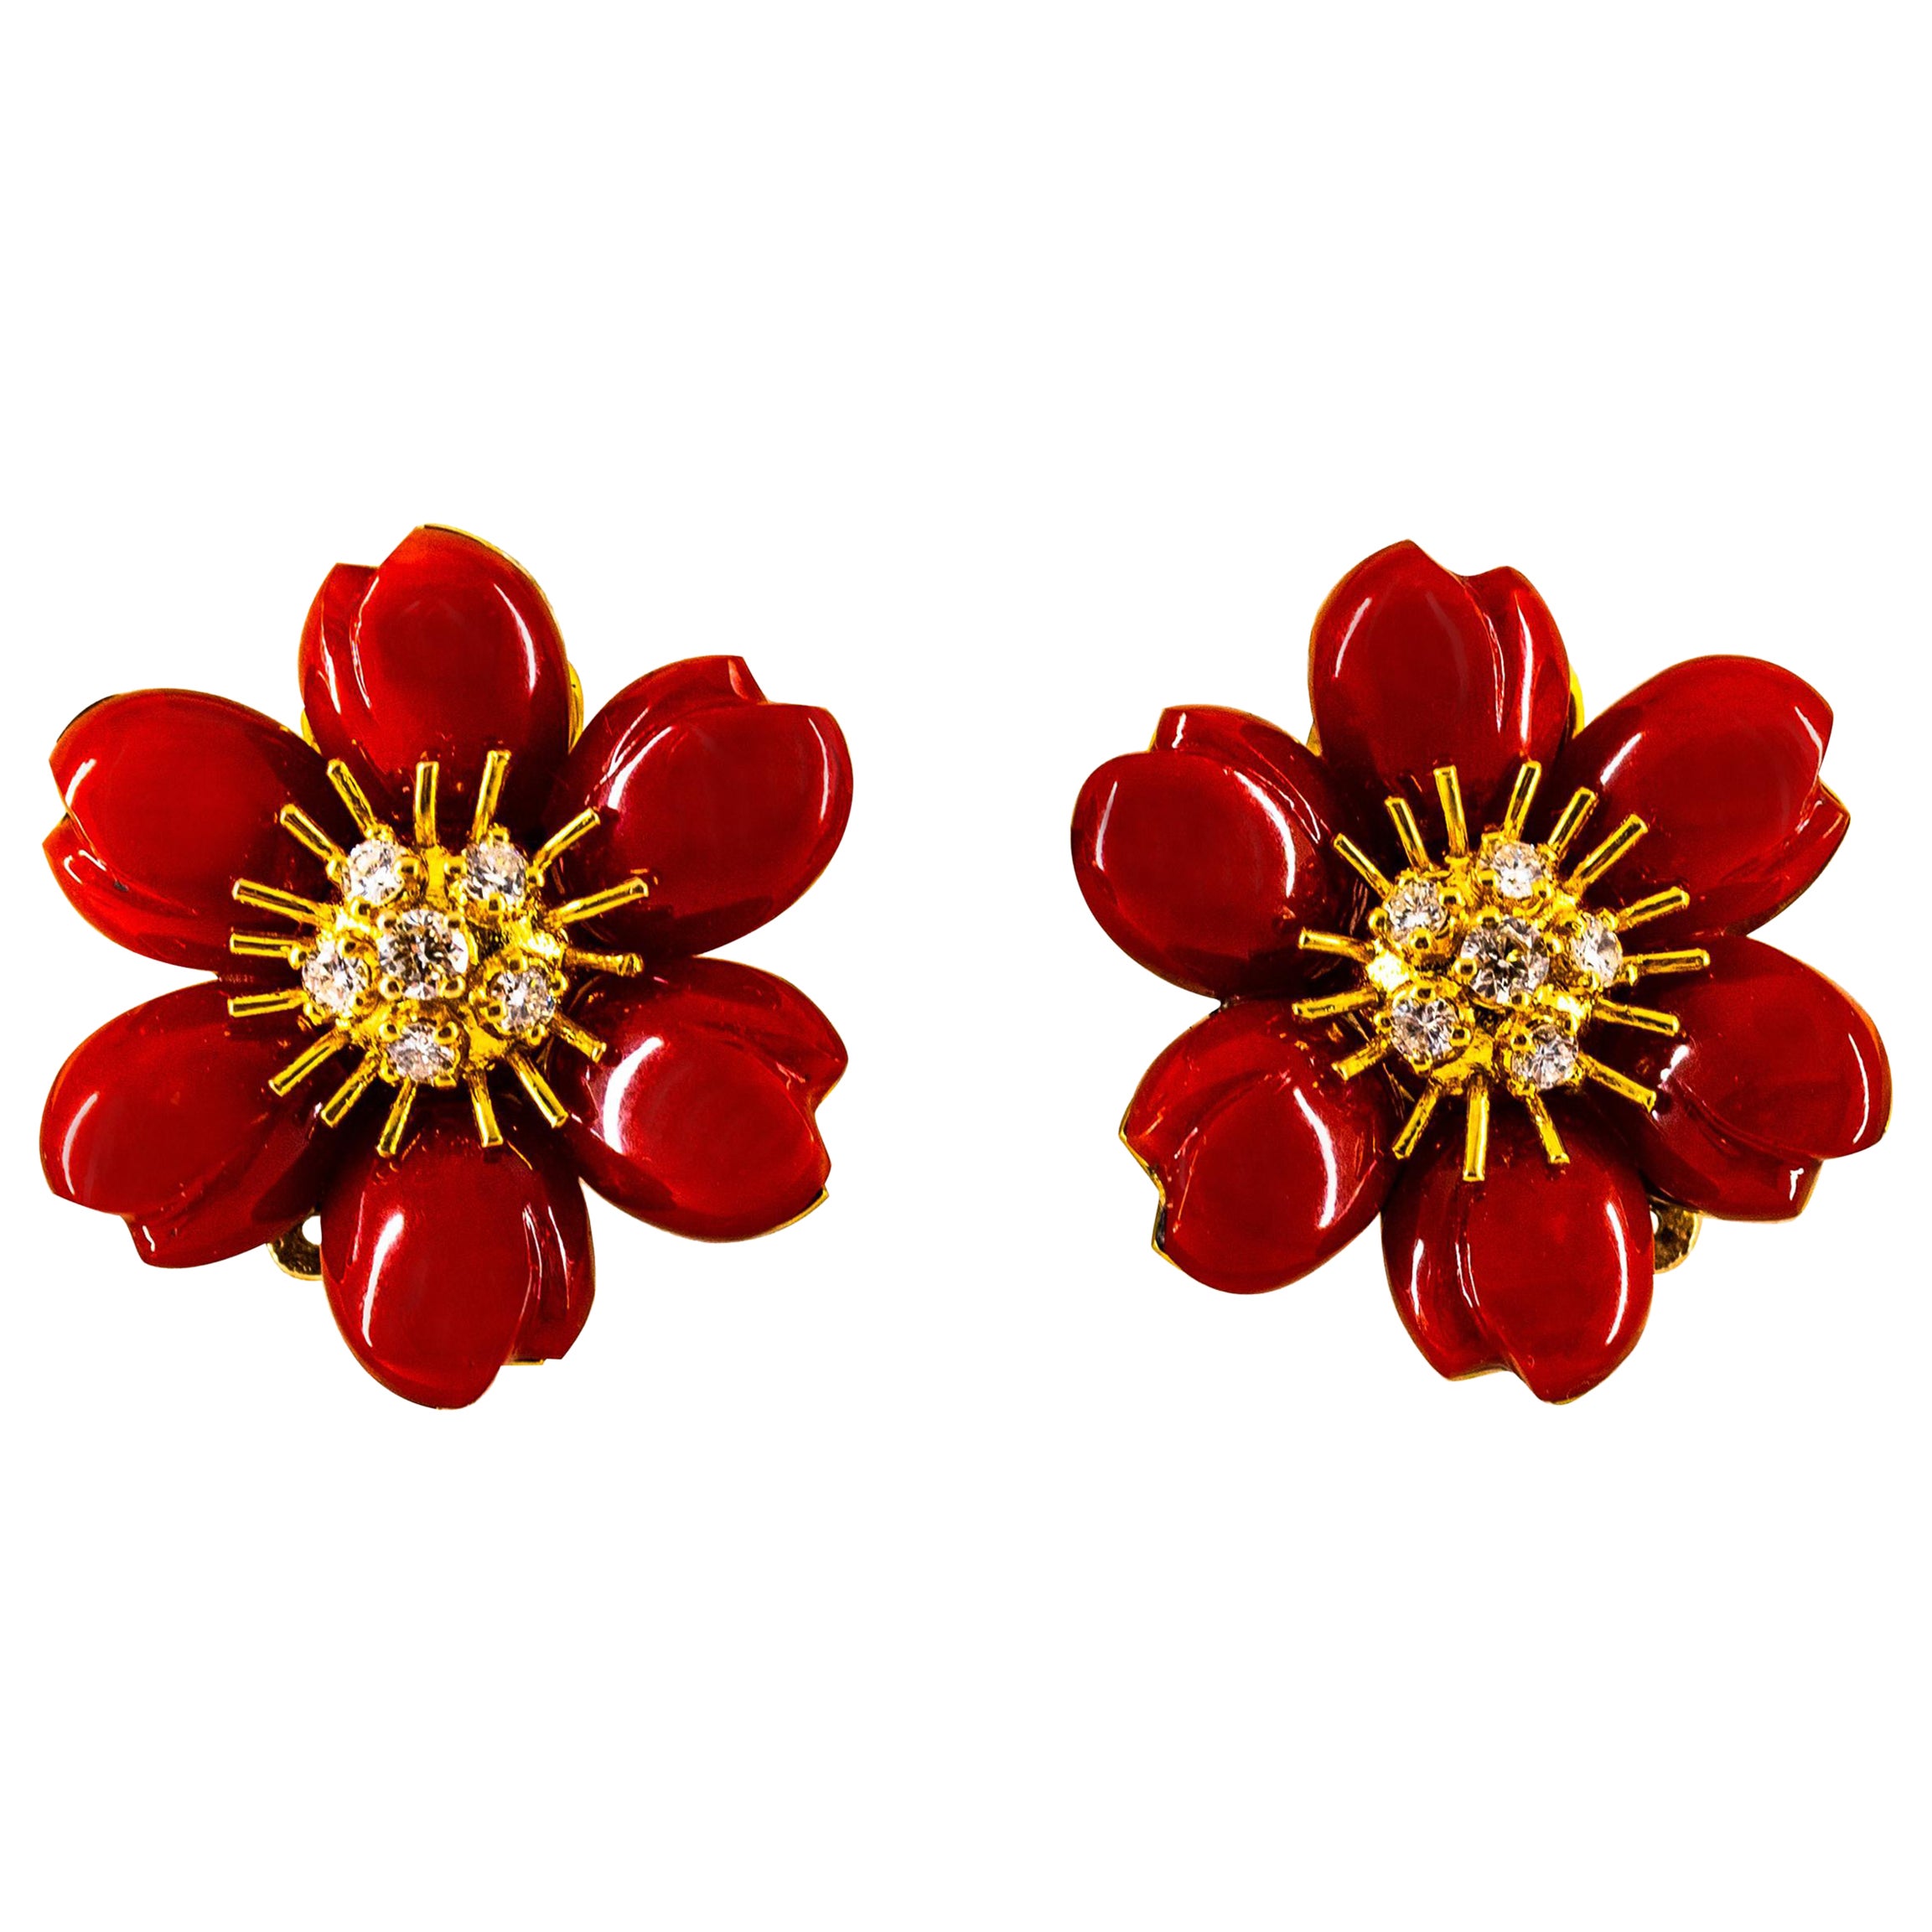 Boucles d'oreilles "Flowers" Art Nouveau en or jaune avec corail rouge méditerranéen et diamants blancs